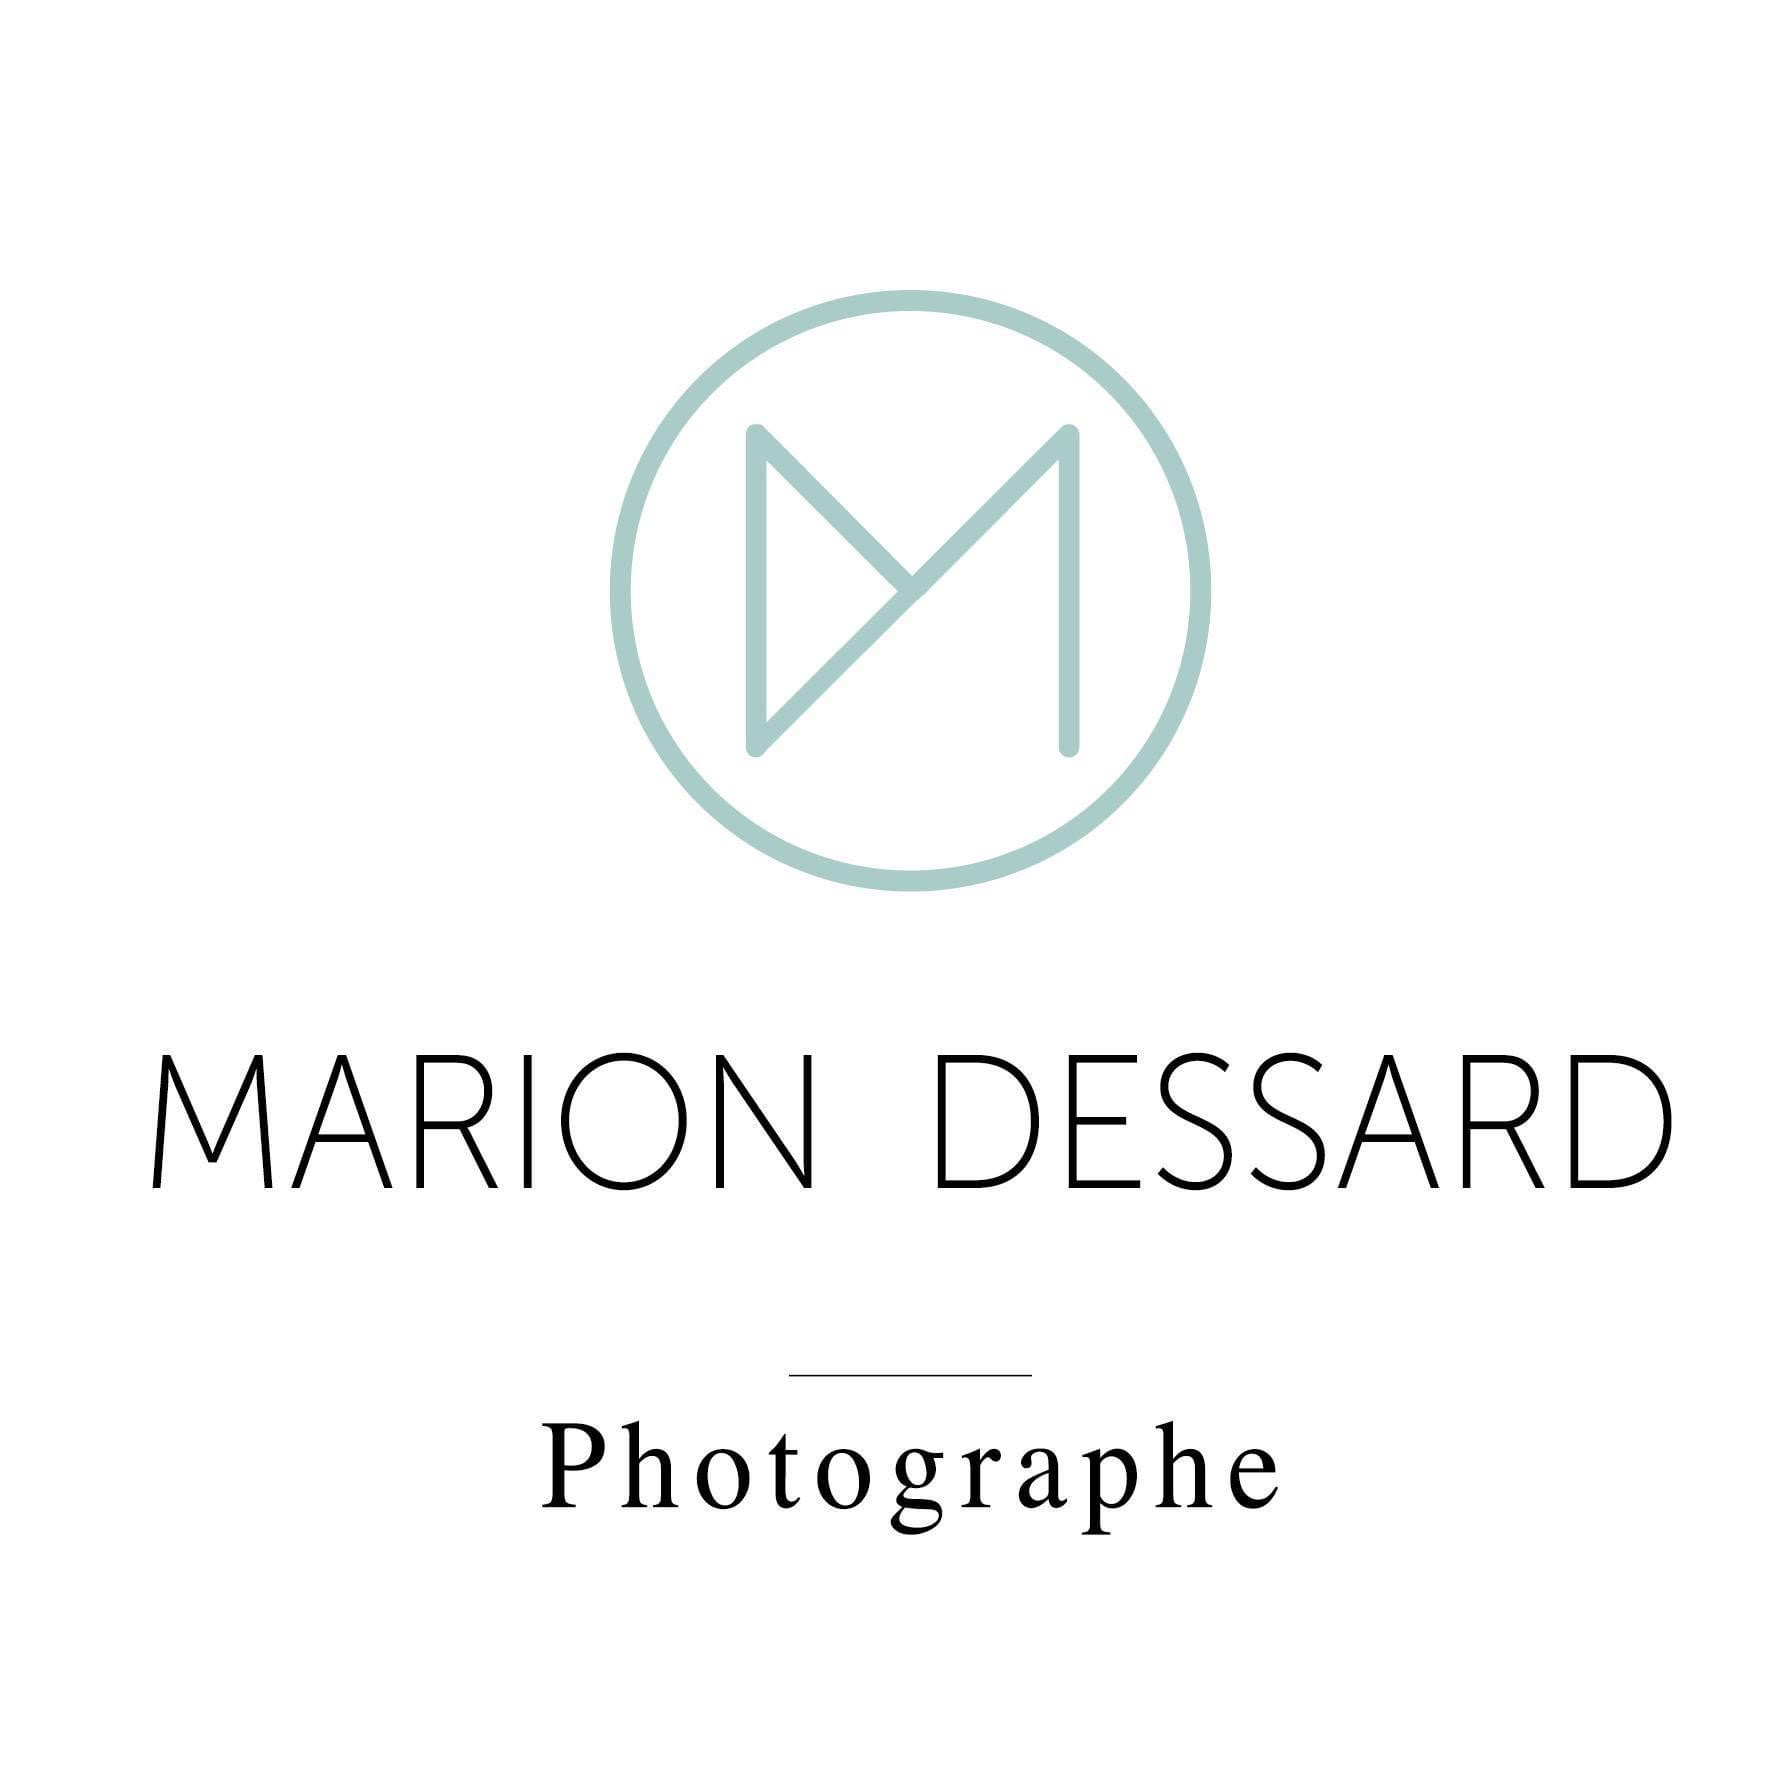 Marion Dessard